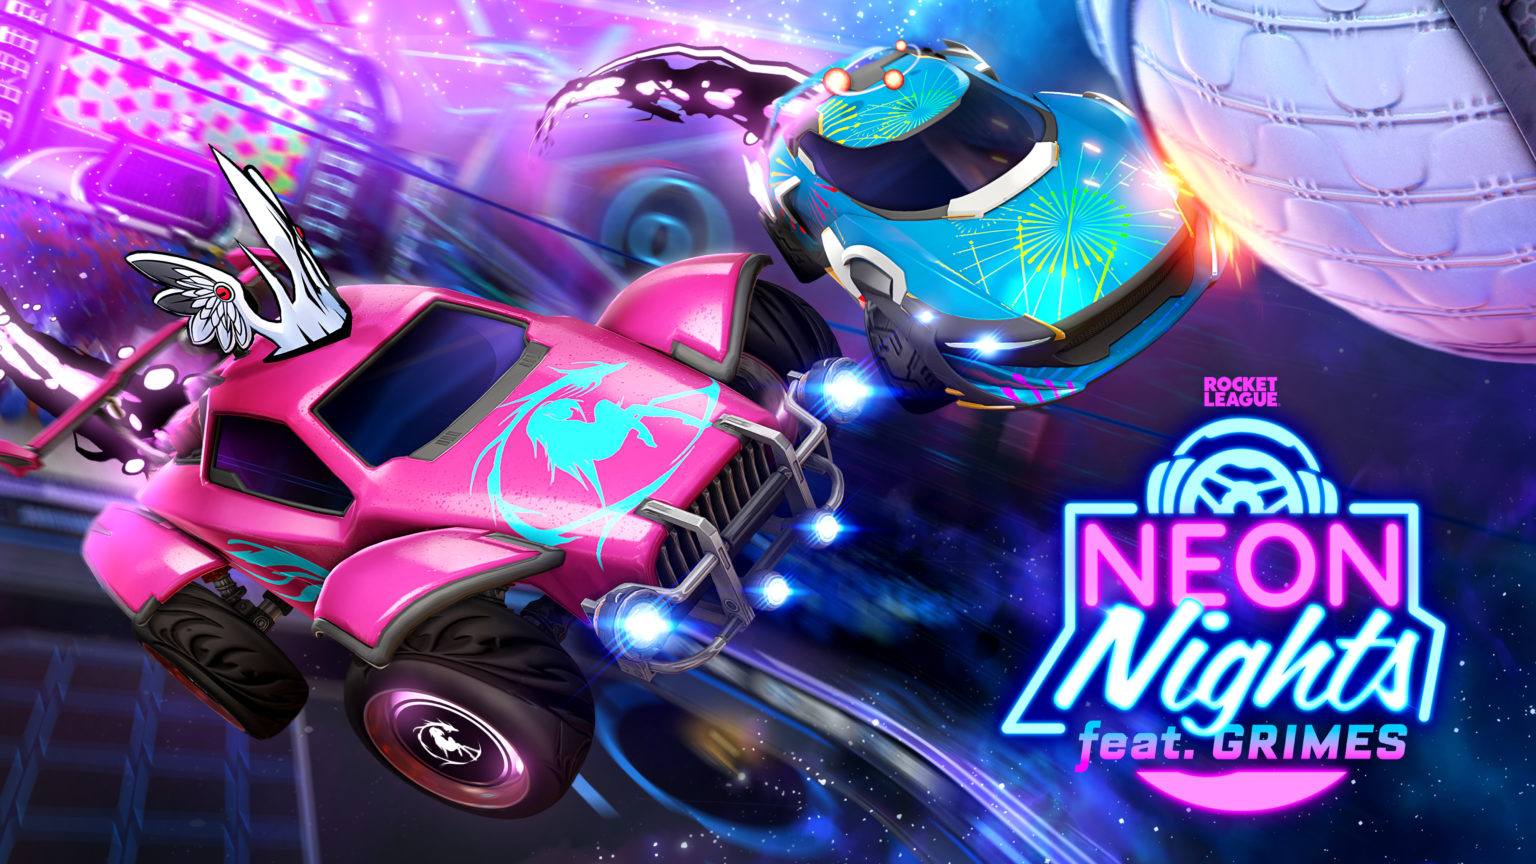 L'événement Neon Nights Rocket League se concentre également sur la musique en partenariat avec Grimes !